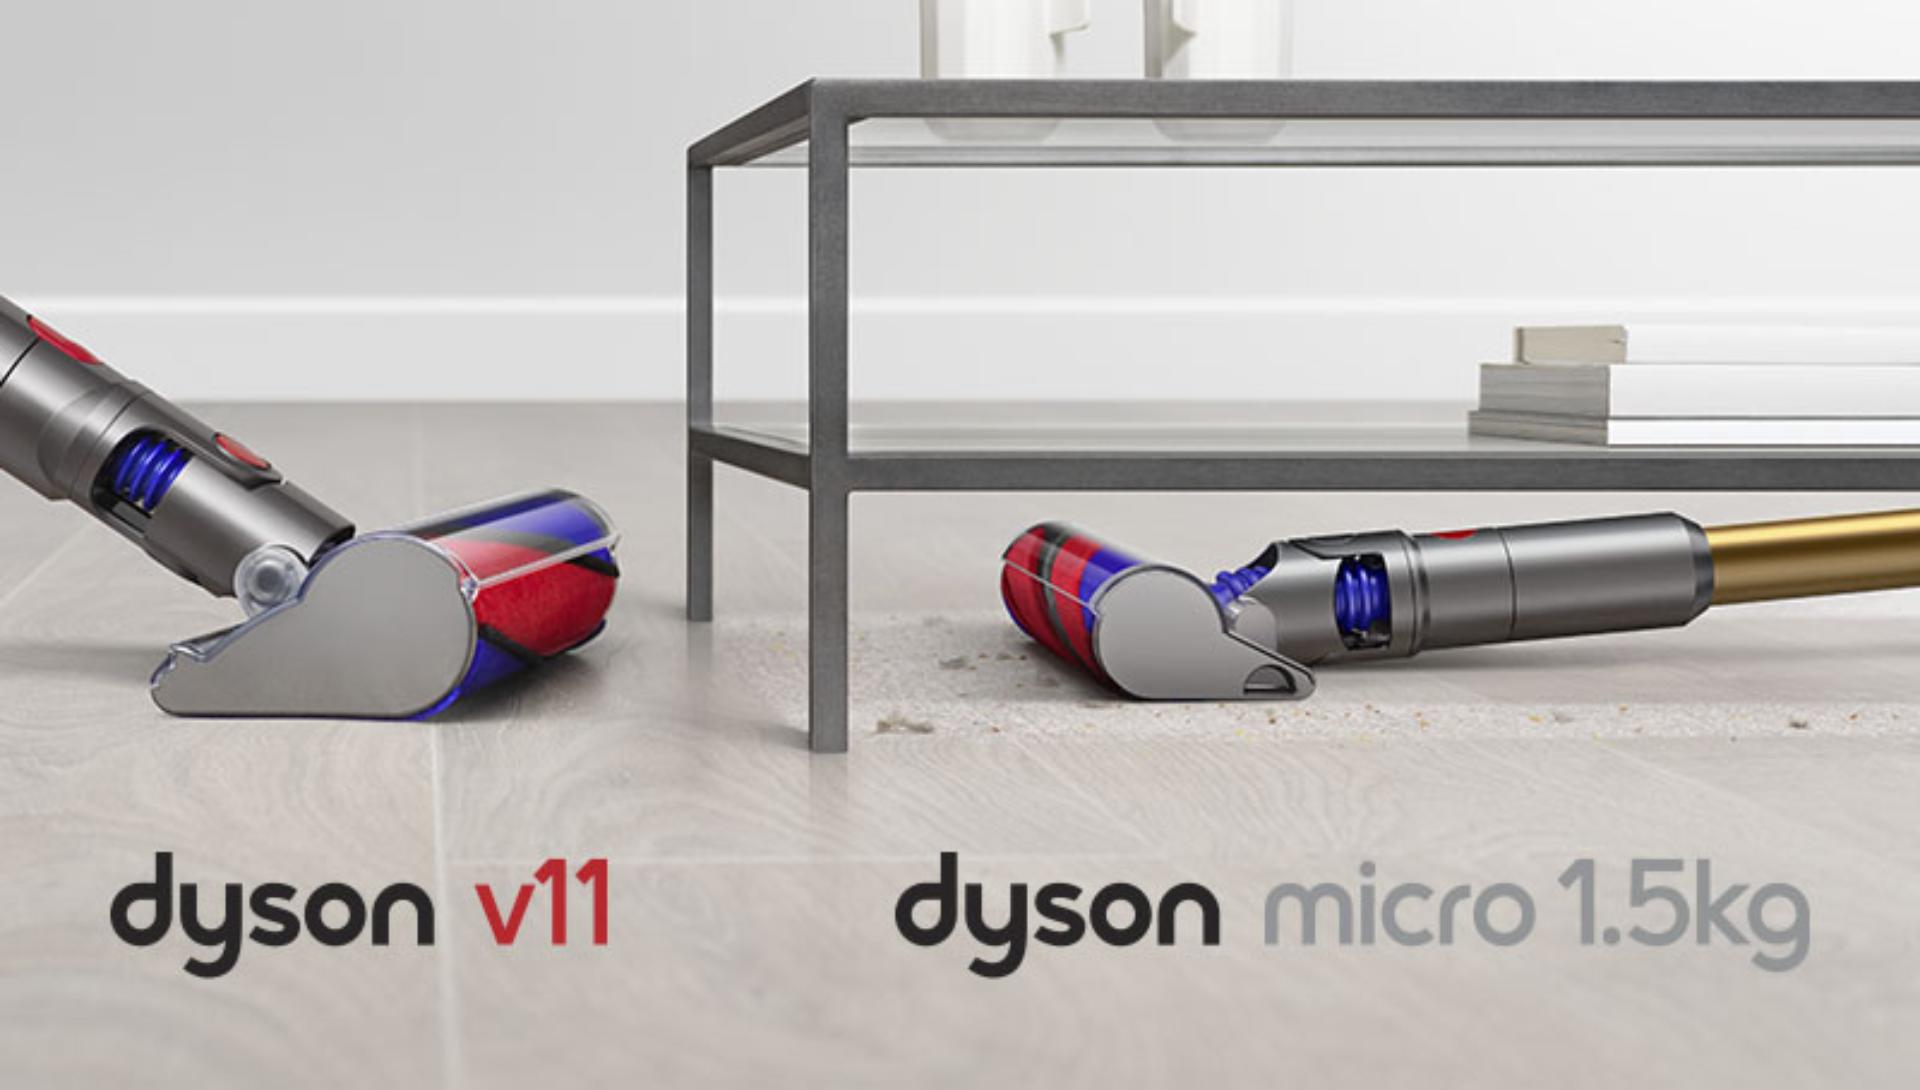 Curățarea sub masă cu ajutorul capătului de curățare Dyson Micro 1,5 kg, în comparație cu cea efectuată cu capul de curățare Dyson V11.